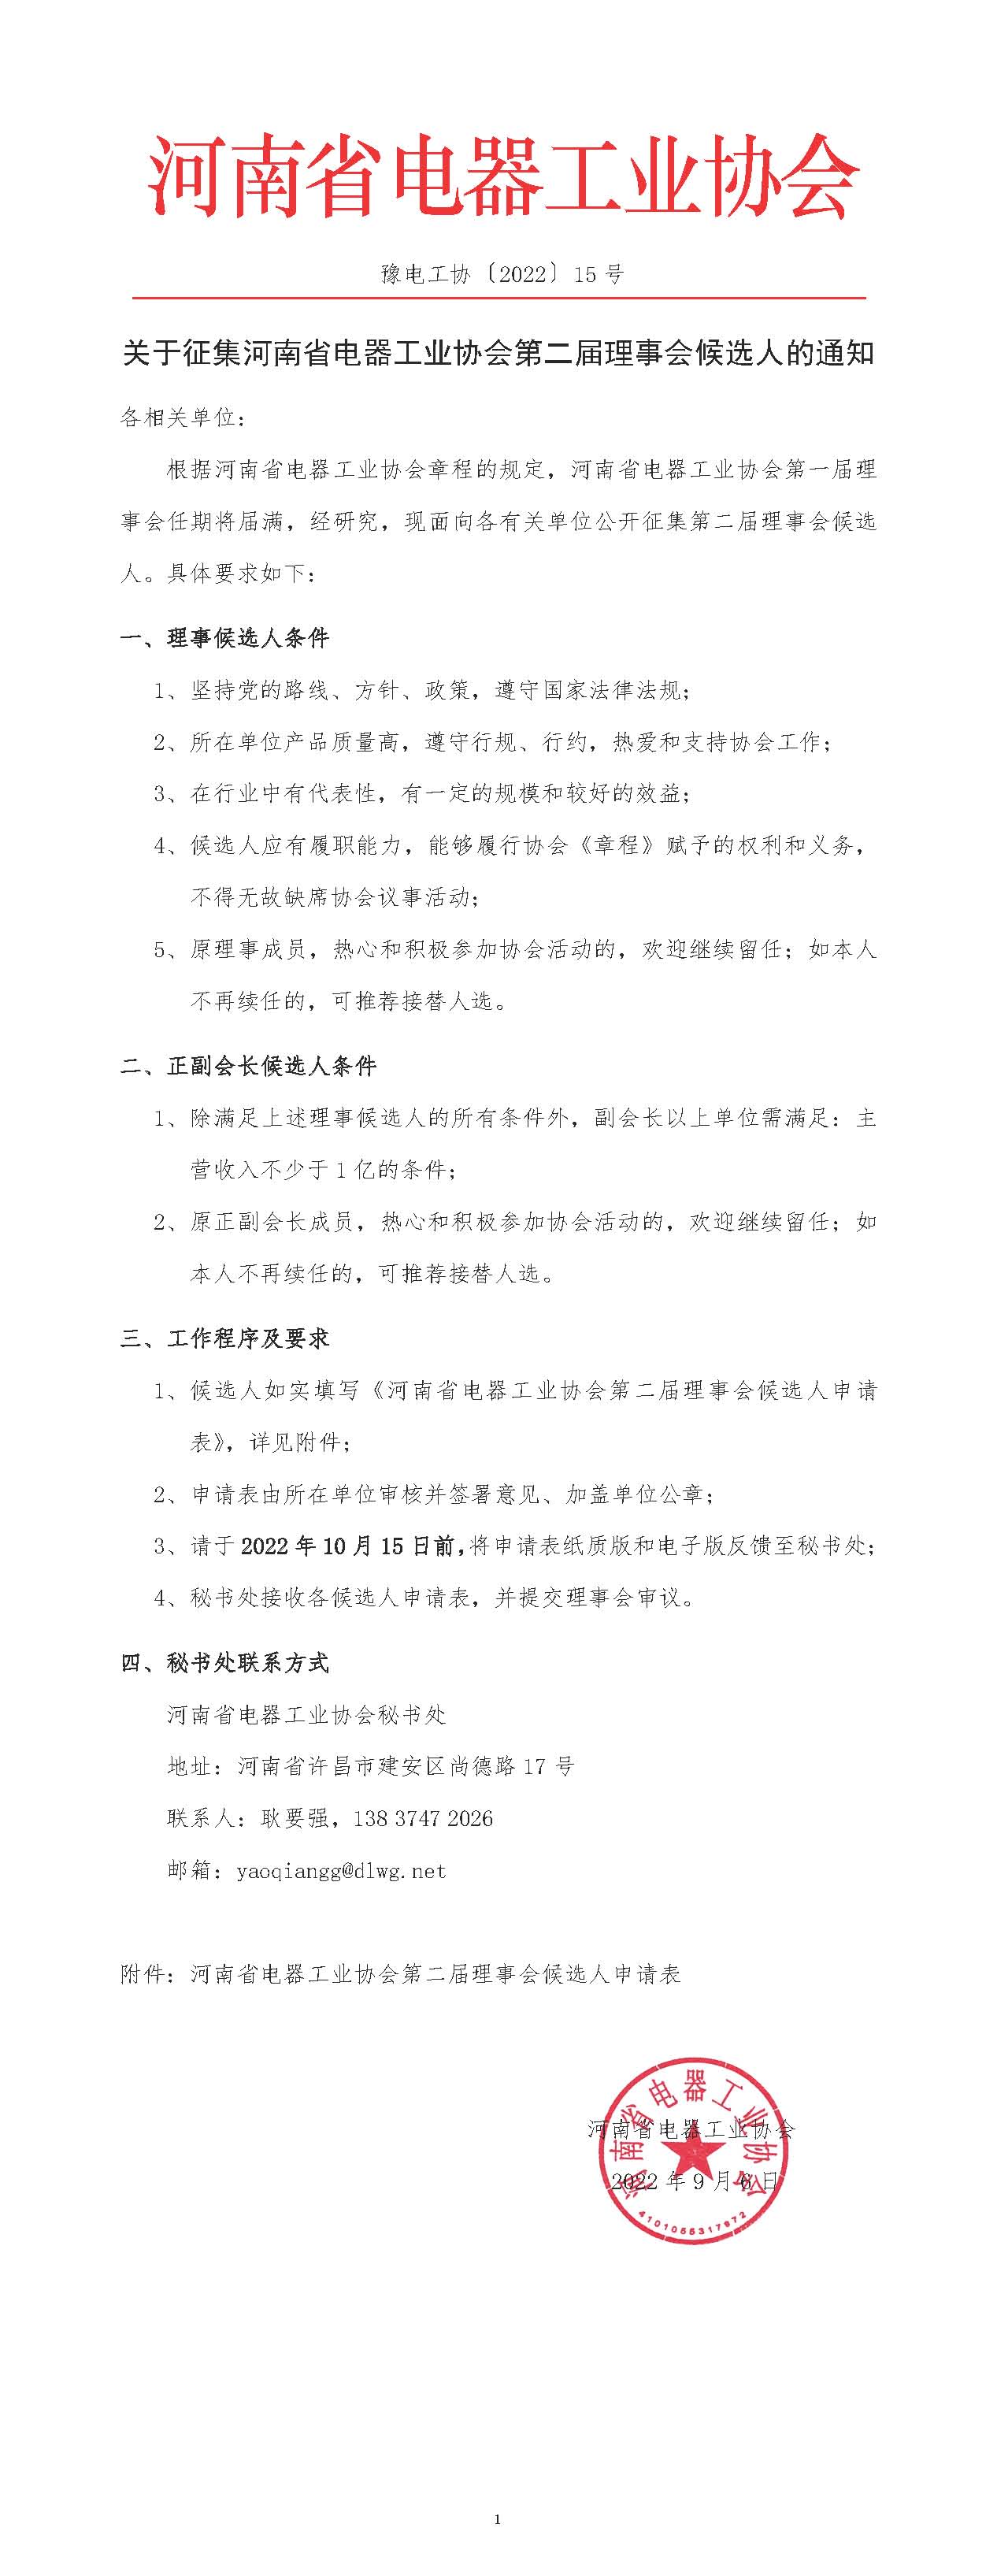 关于征集河南省电器工业协会第二届理事会候选人的通知.jpg